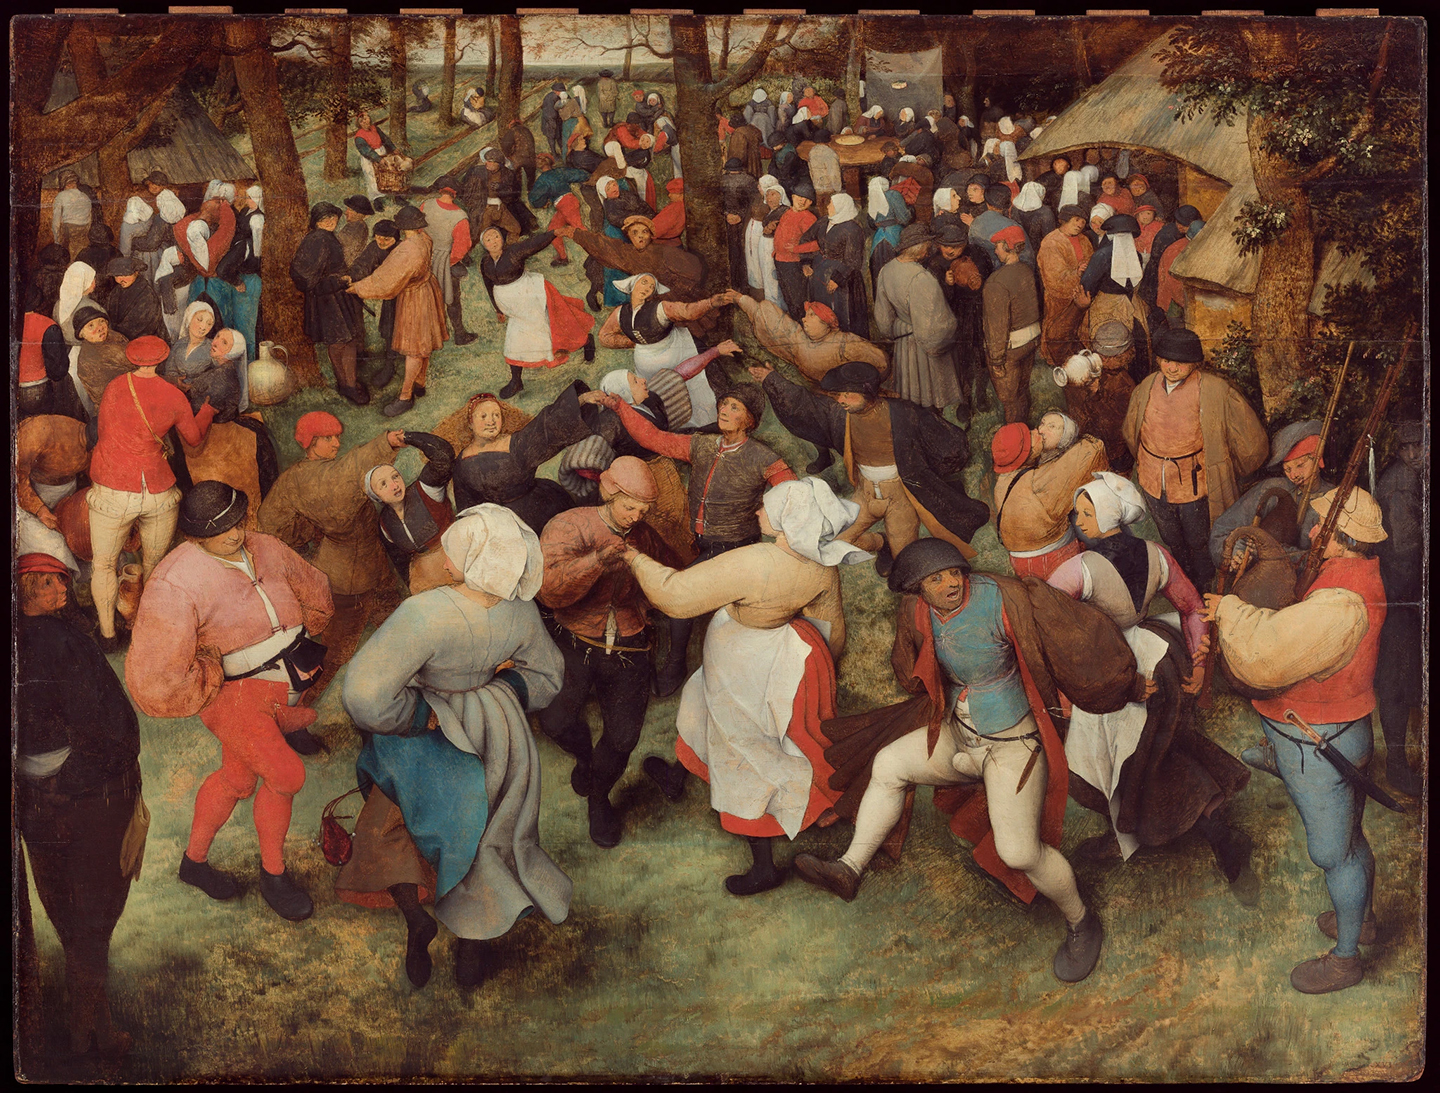  The Wedding Dance by Pieter Bruegel the Elder